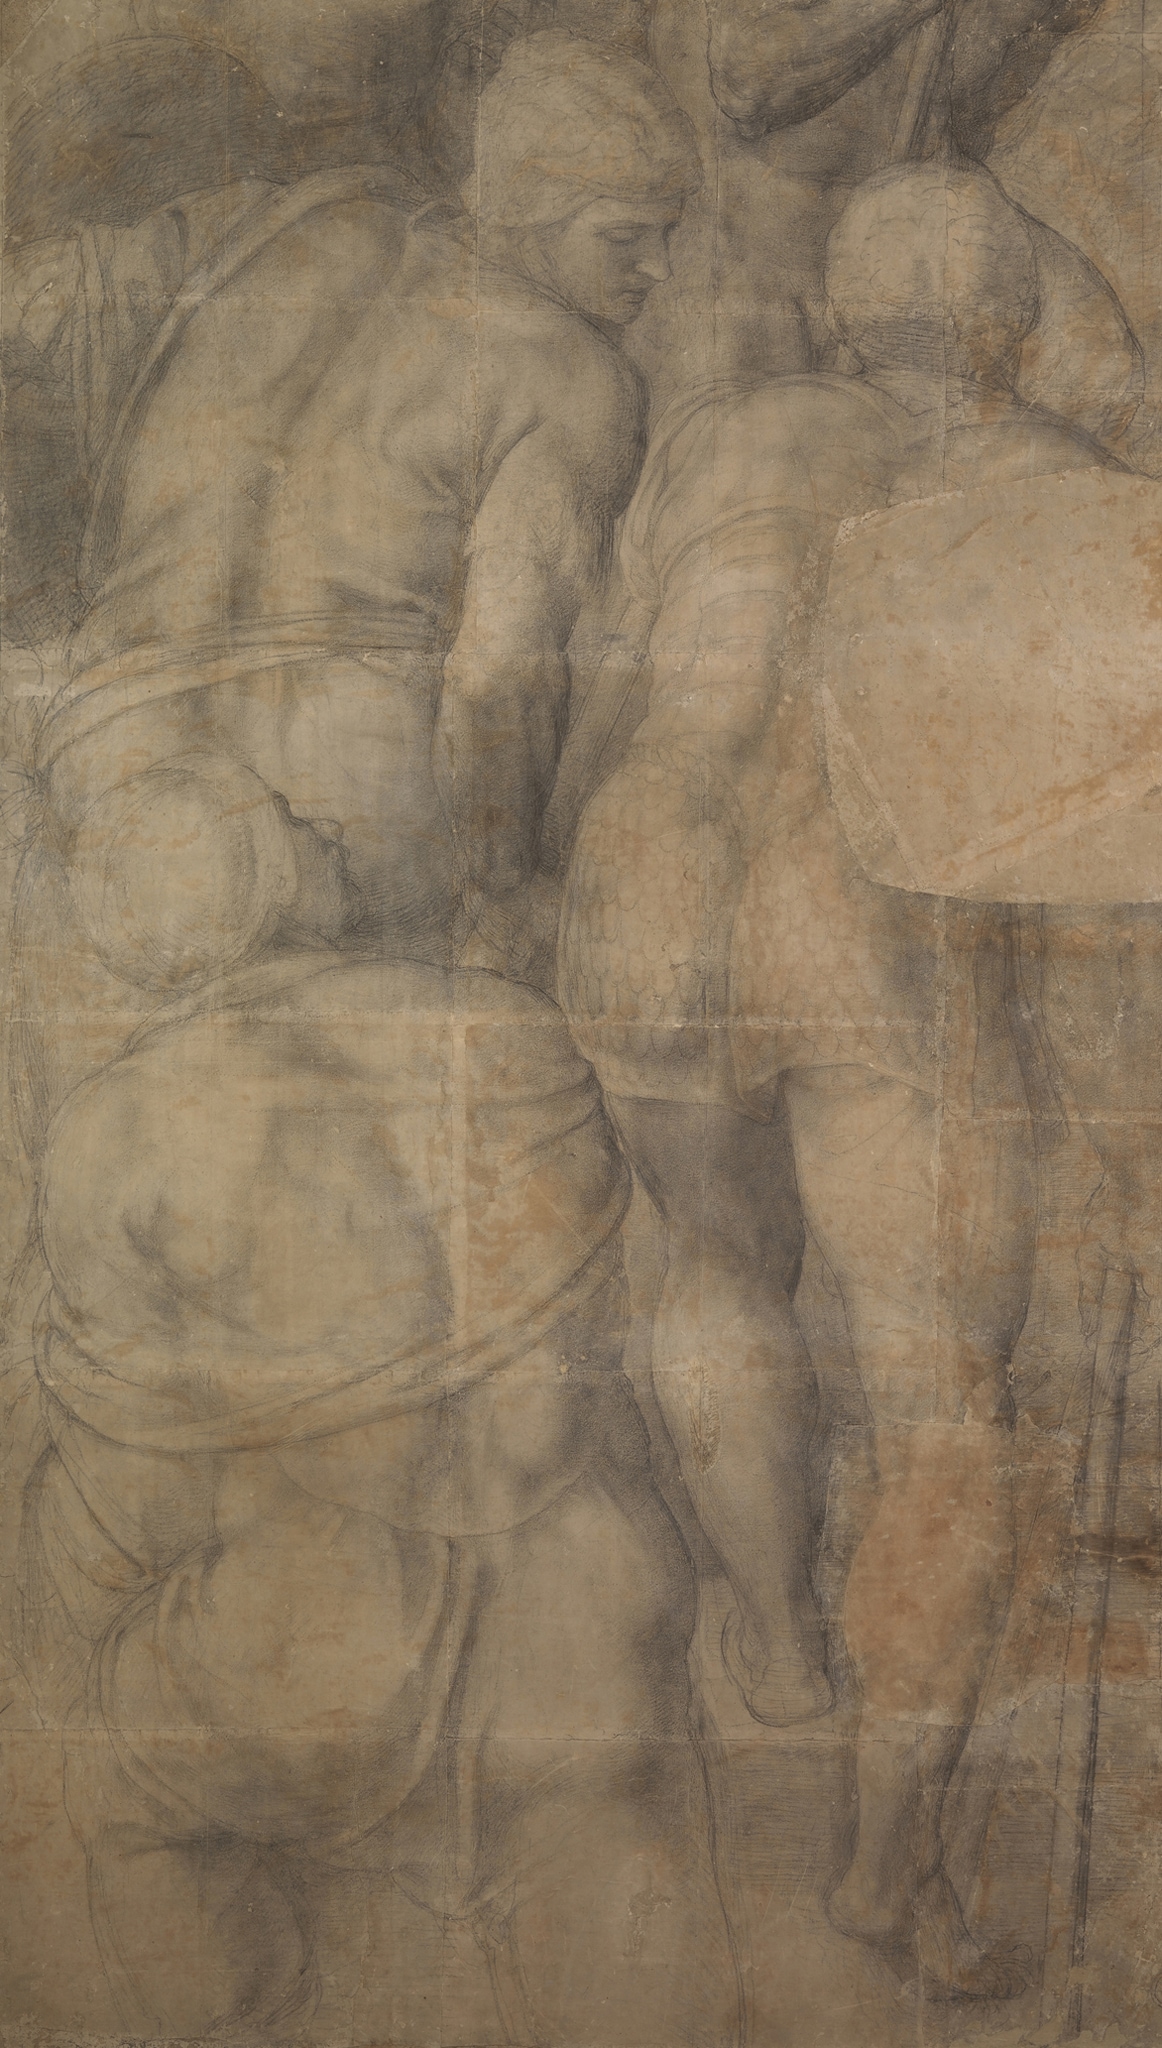 Michelangelo Buonarroti, Gruppo di armigeri, 1546-50 ca., carboncino su 19 fogli di carta reale bolognese, 2630x1560mm. Raro disegno preparatorio per l’affresco della Crocifissione di San Pietro (Cappella Paolina, Vaticano), appartenente a uno dei soli due cartoni rimasti di Michelangelo (1475-1564). Gli armigeri, è giunto a Capodimonte nel '700, con la Collezione Farnese ereditata da Carlo III.